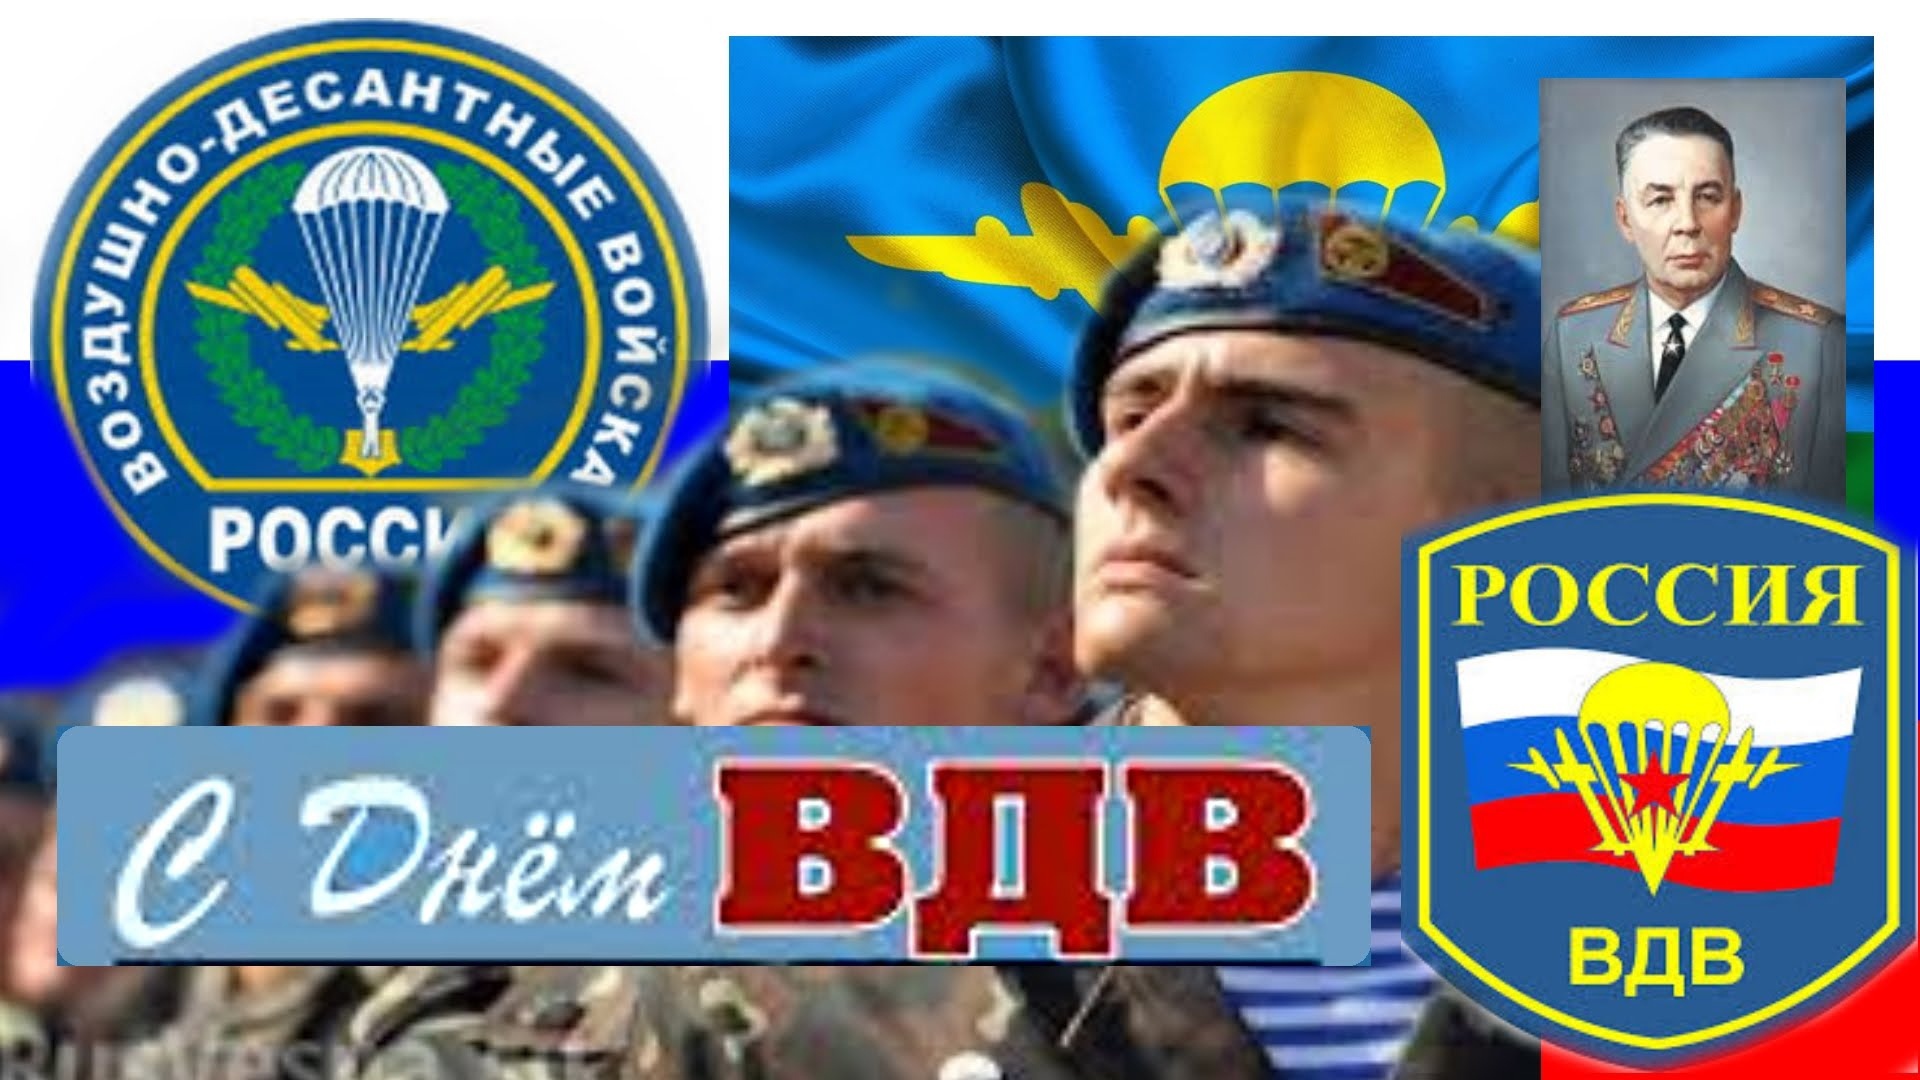 2 августа - День Воздушно-десантных войск Российской Федерации.